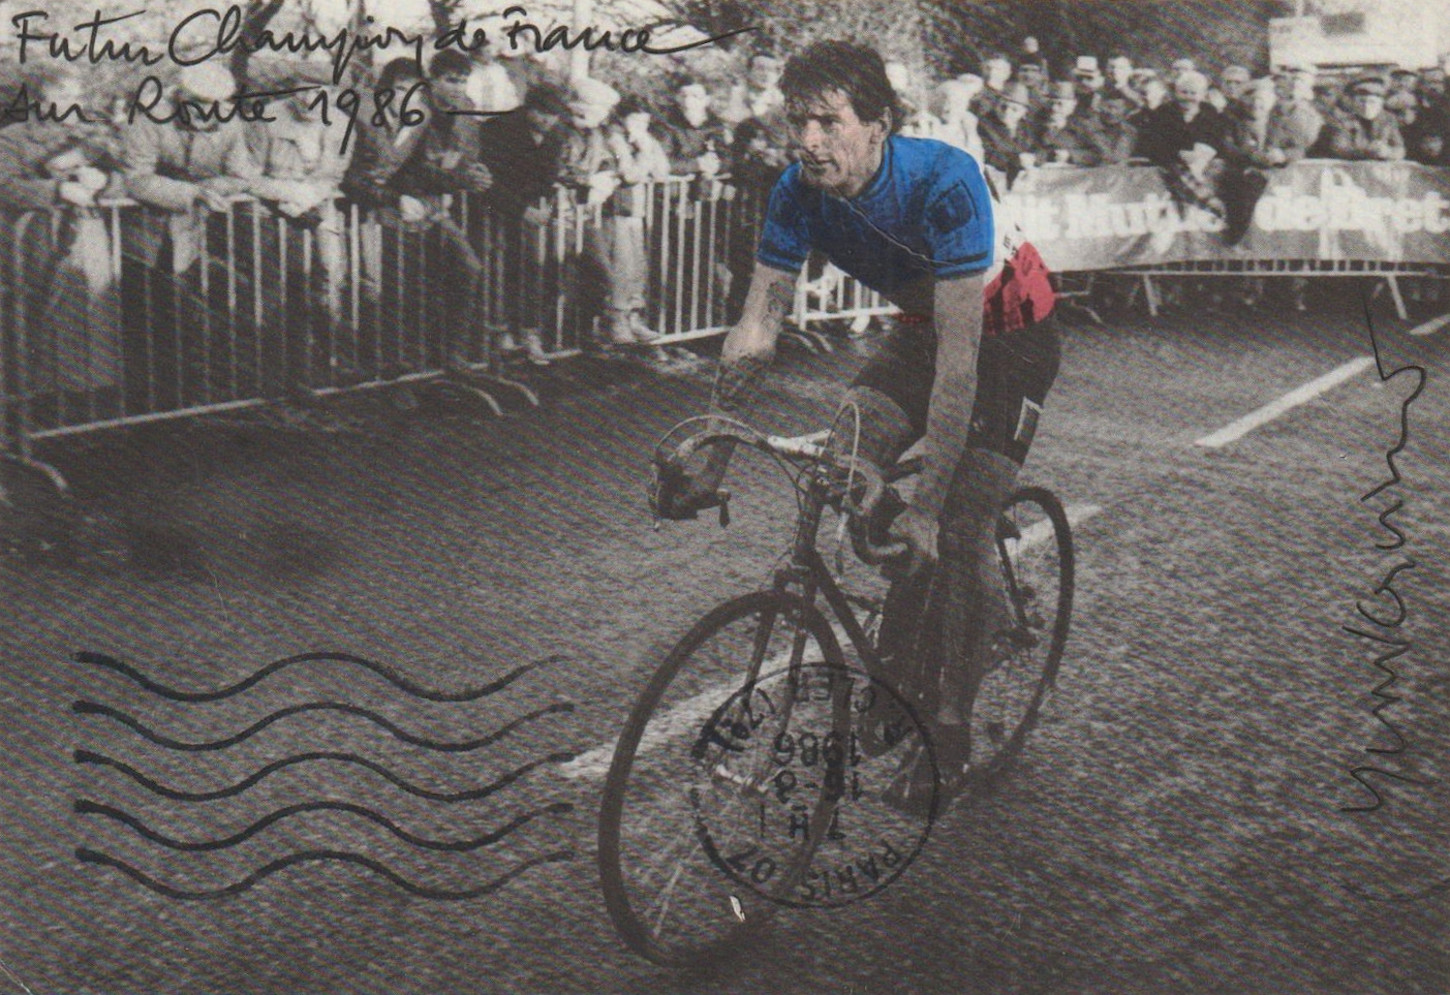 A Plouay, sur la route du Grand prix, 1986. Collection privée Yves-Marie Evanno.